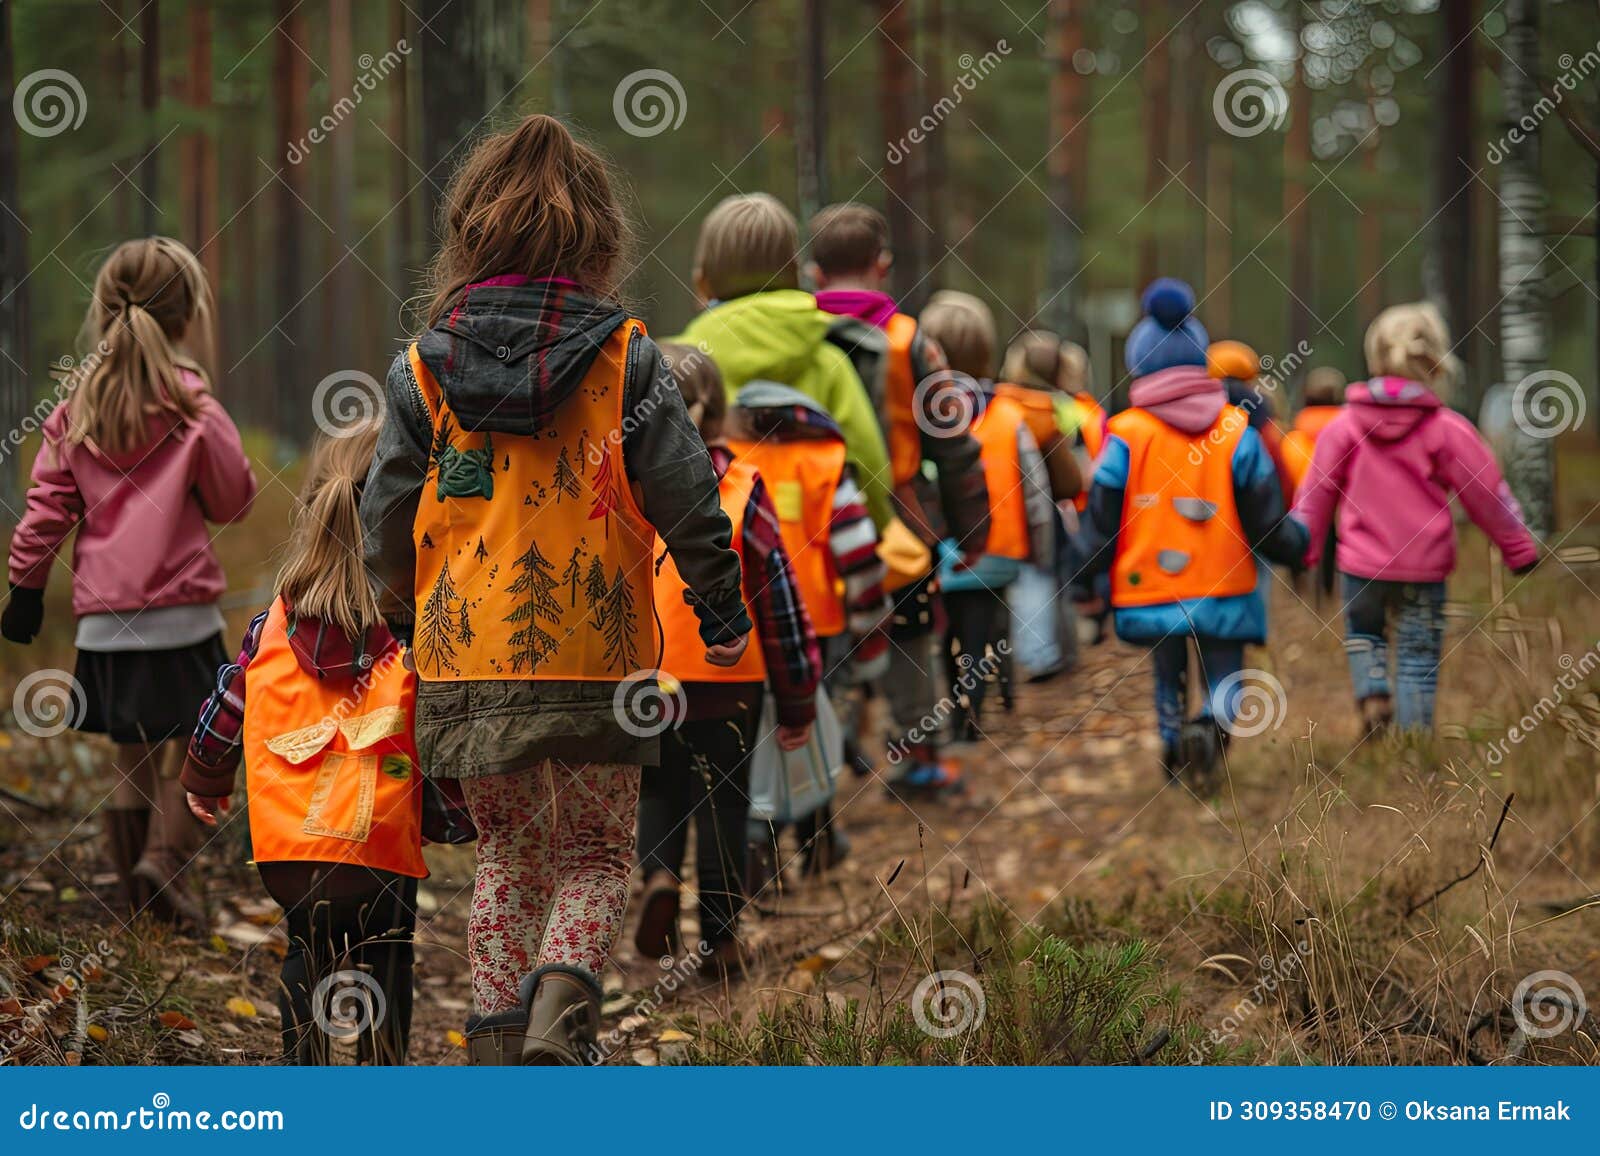 kindergarten in forest, children walking with tutors in wild park, finnish forest school, forest kindergarten